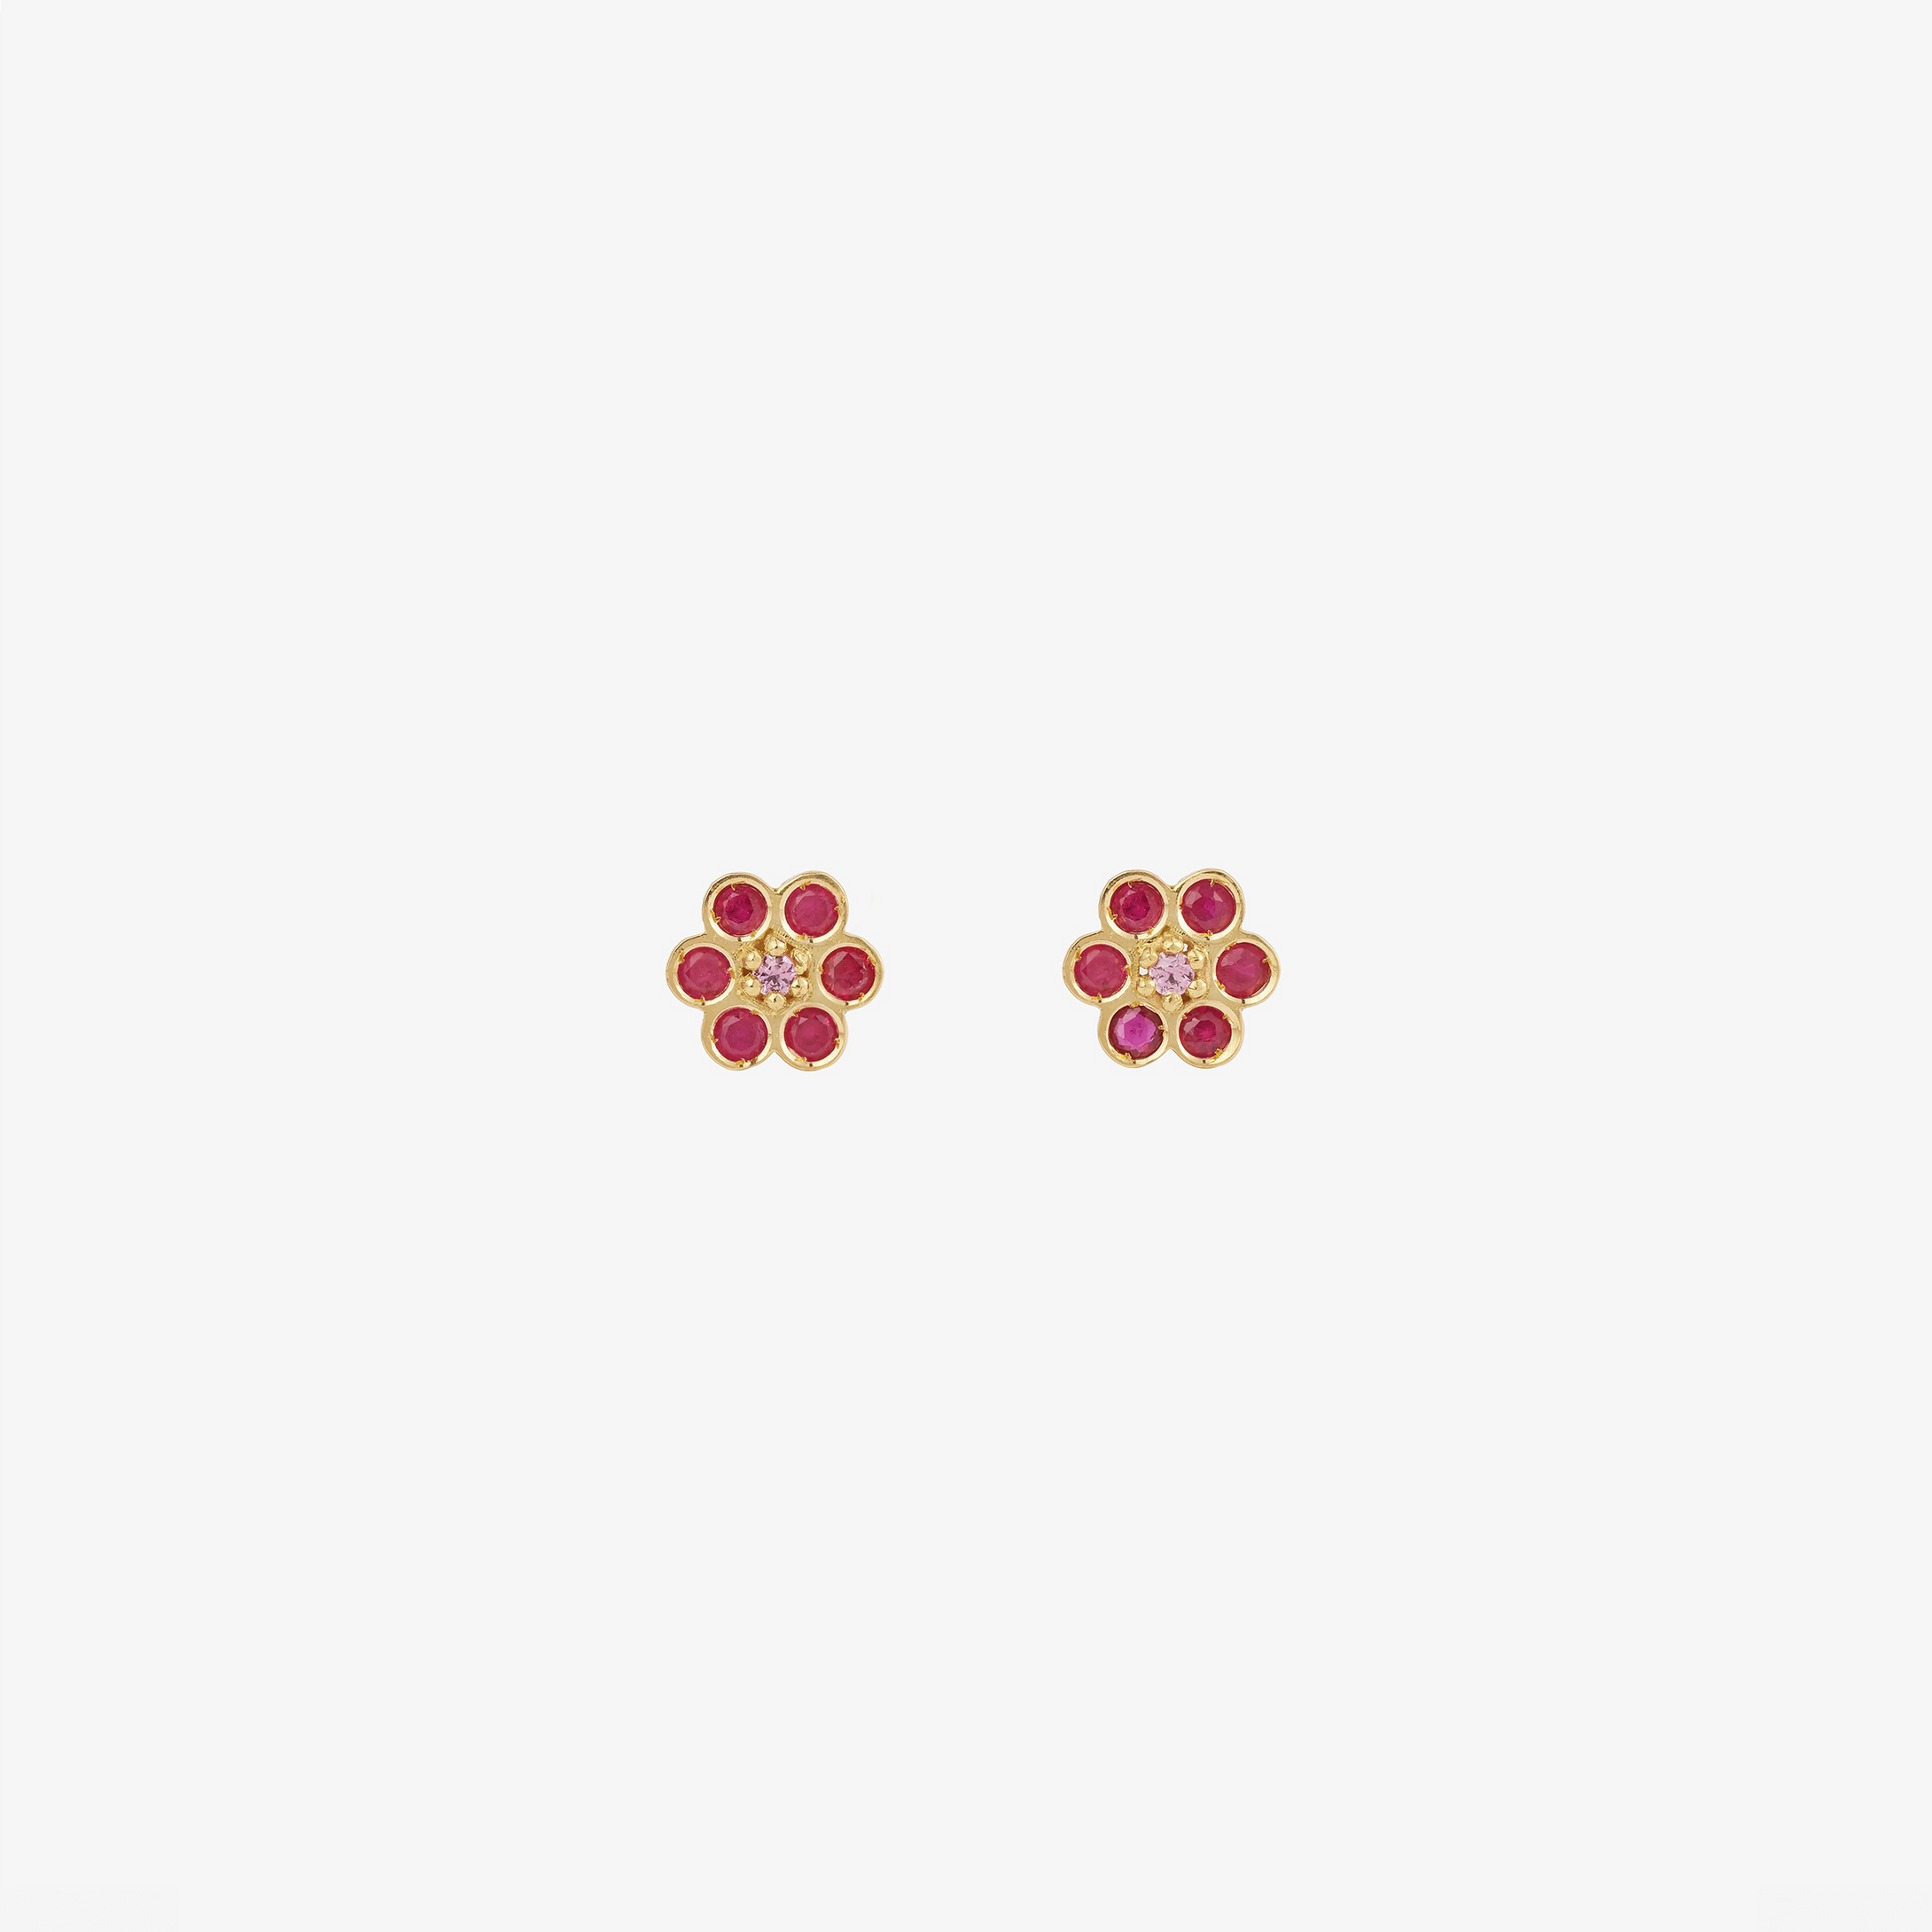 Puces d'oreilles Miniflower 1 rouges, or jaune, rubis et saphirs roses face